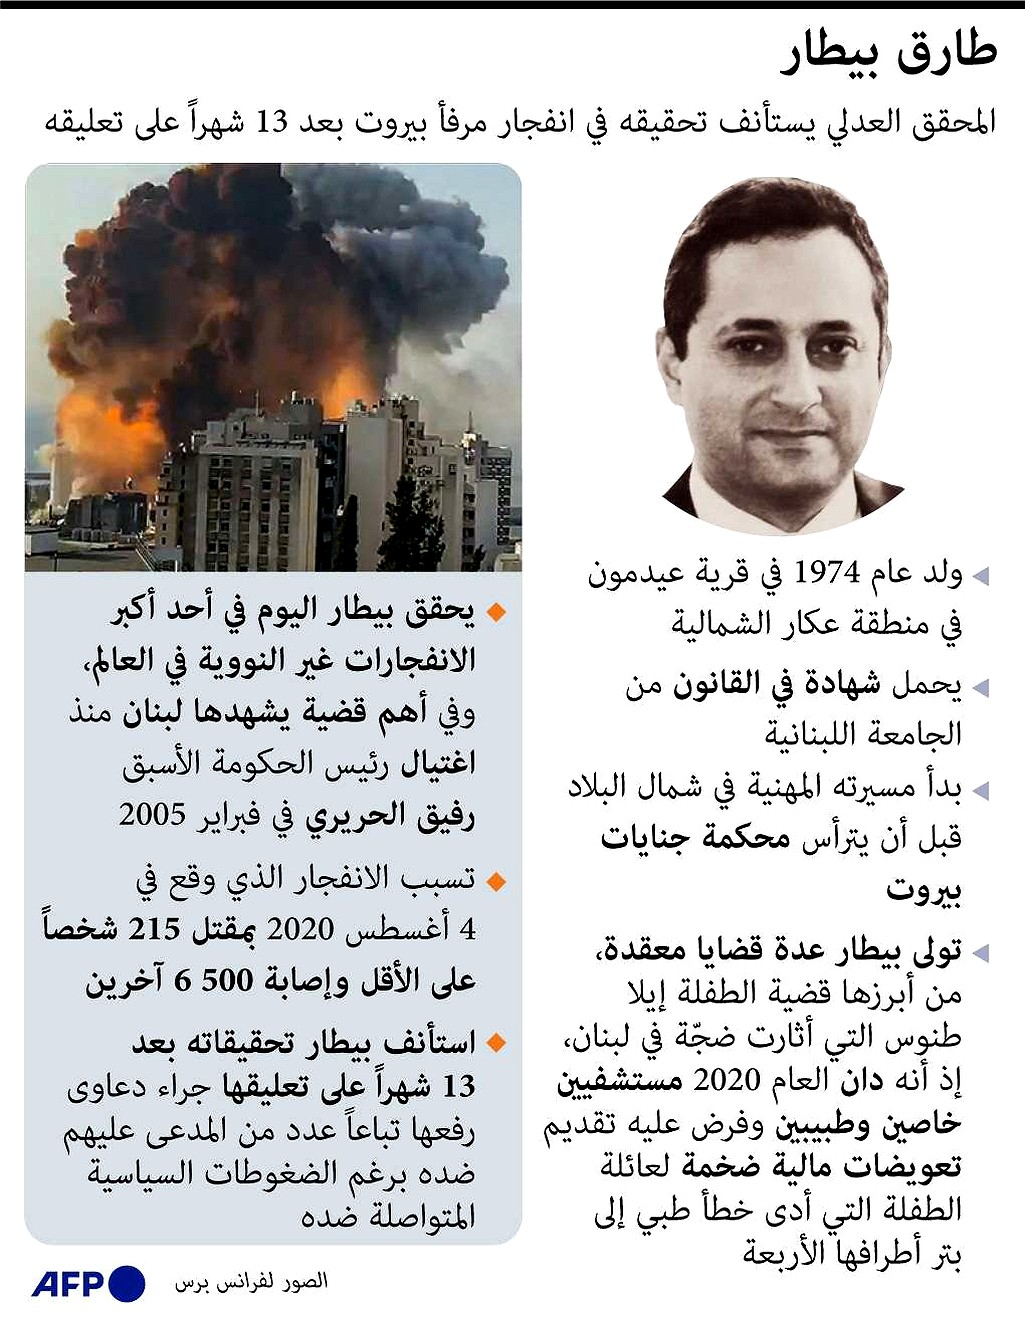 طارق البيطار برز اسمه مع تكليفه بالتحقيق في انفجار مرفأ بيروت